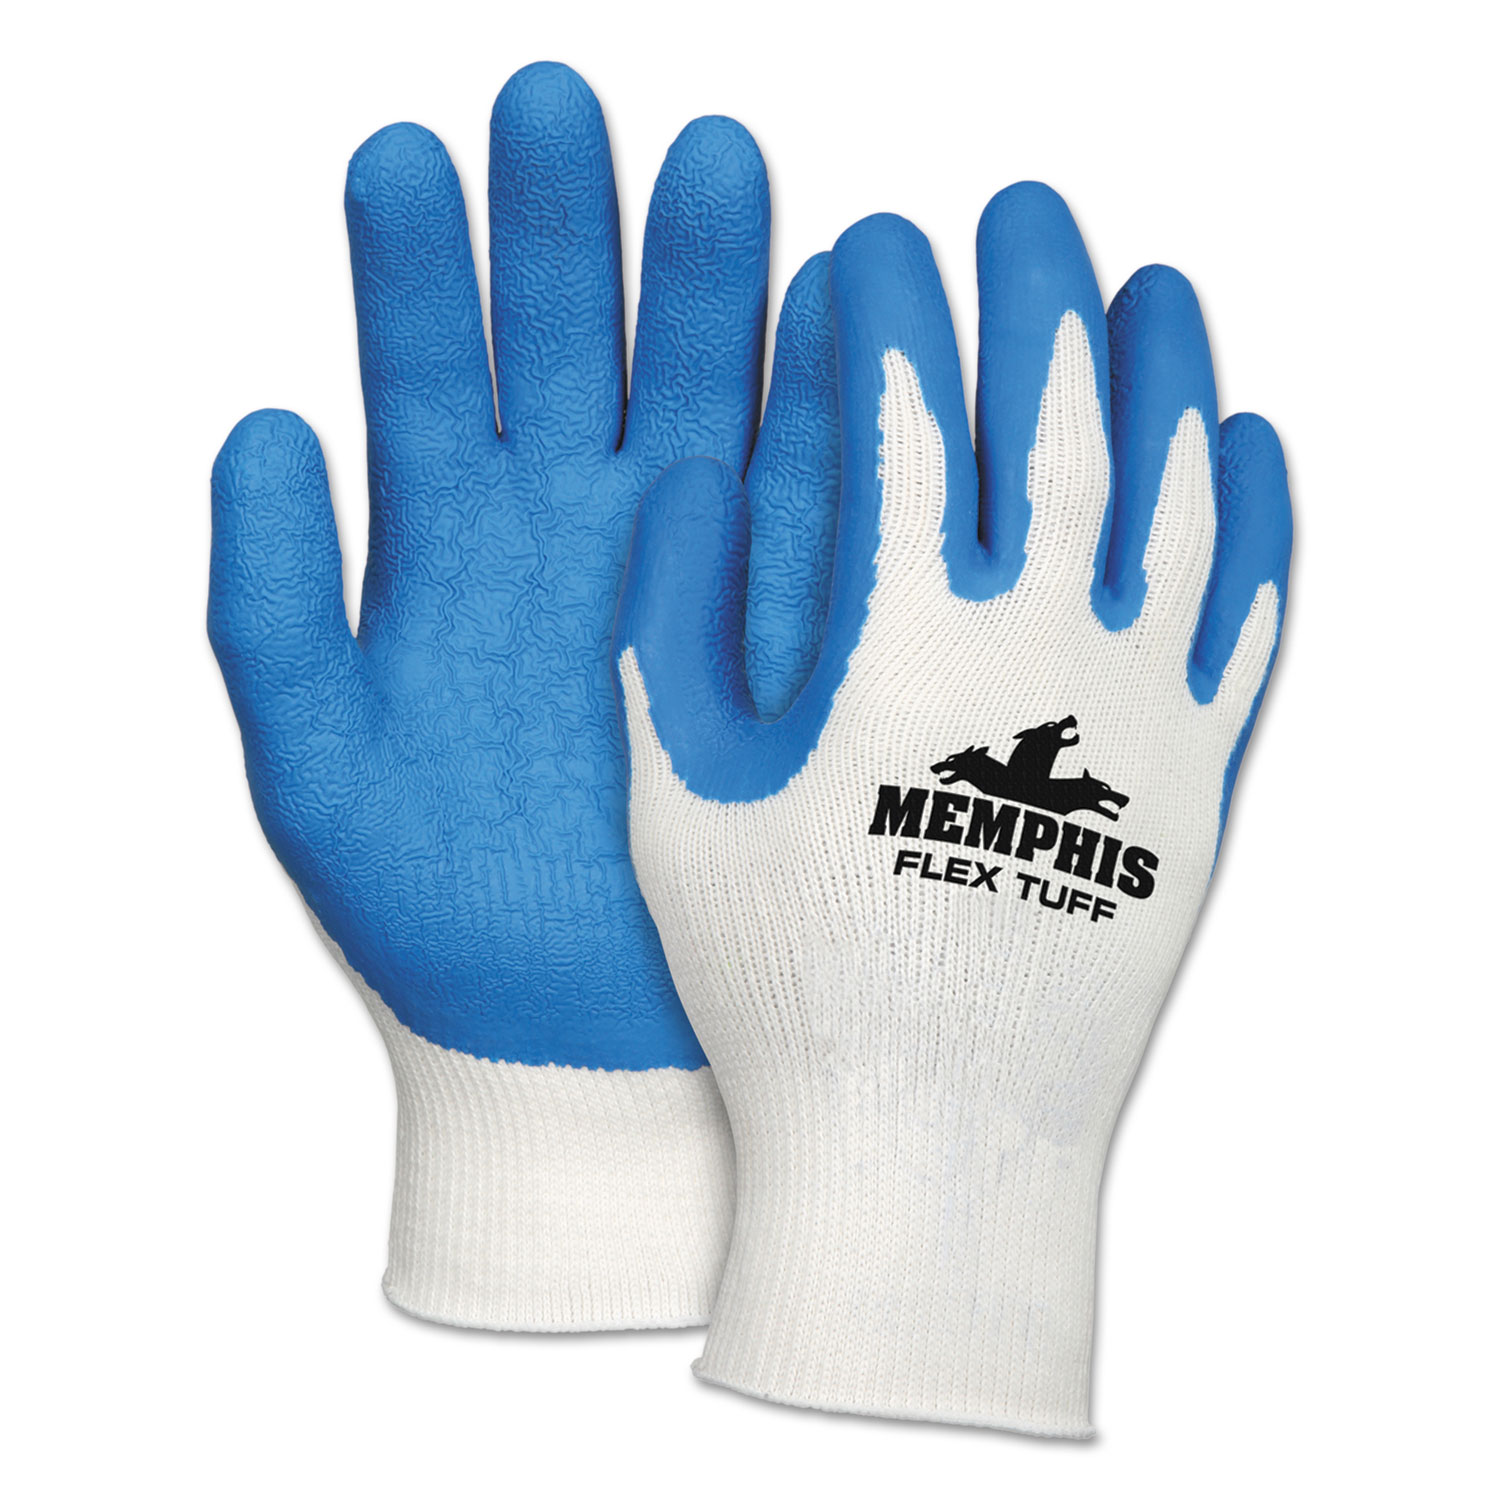  MCR Safety 9680M Flex Tuff Work Gloves, White/Blue, Medium, 10 gauge, 1 Dozen (CRW9680M) 